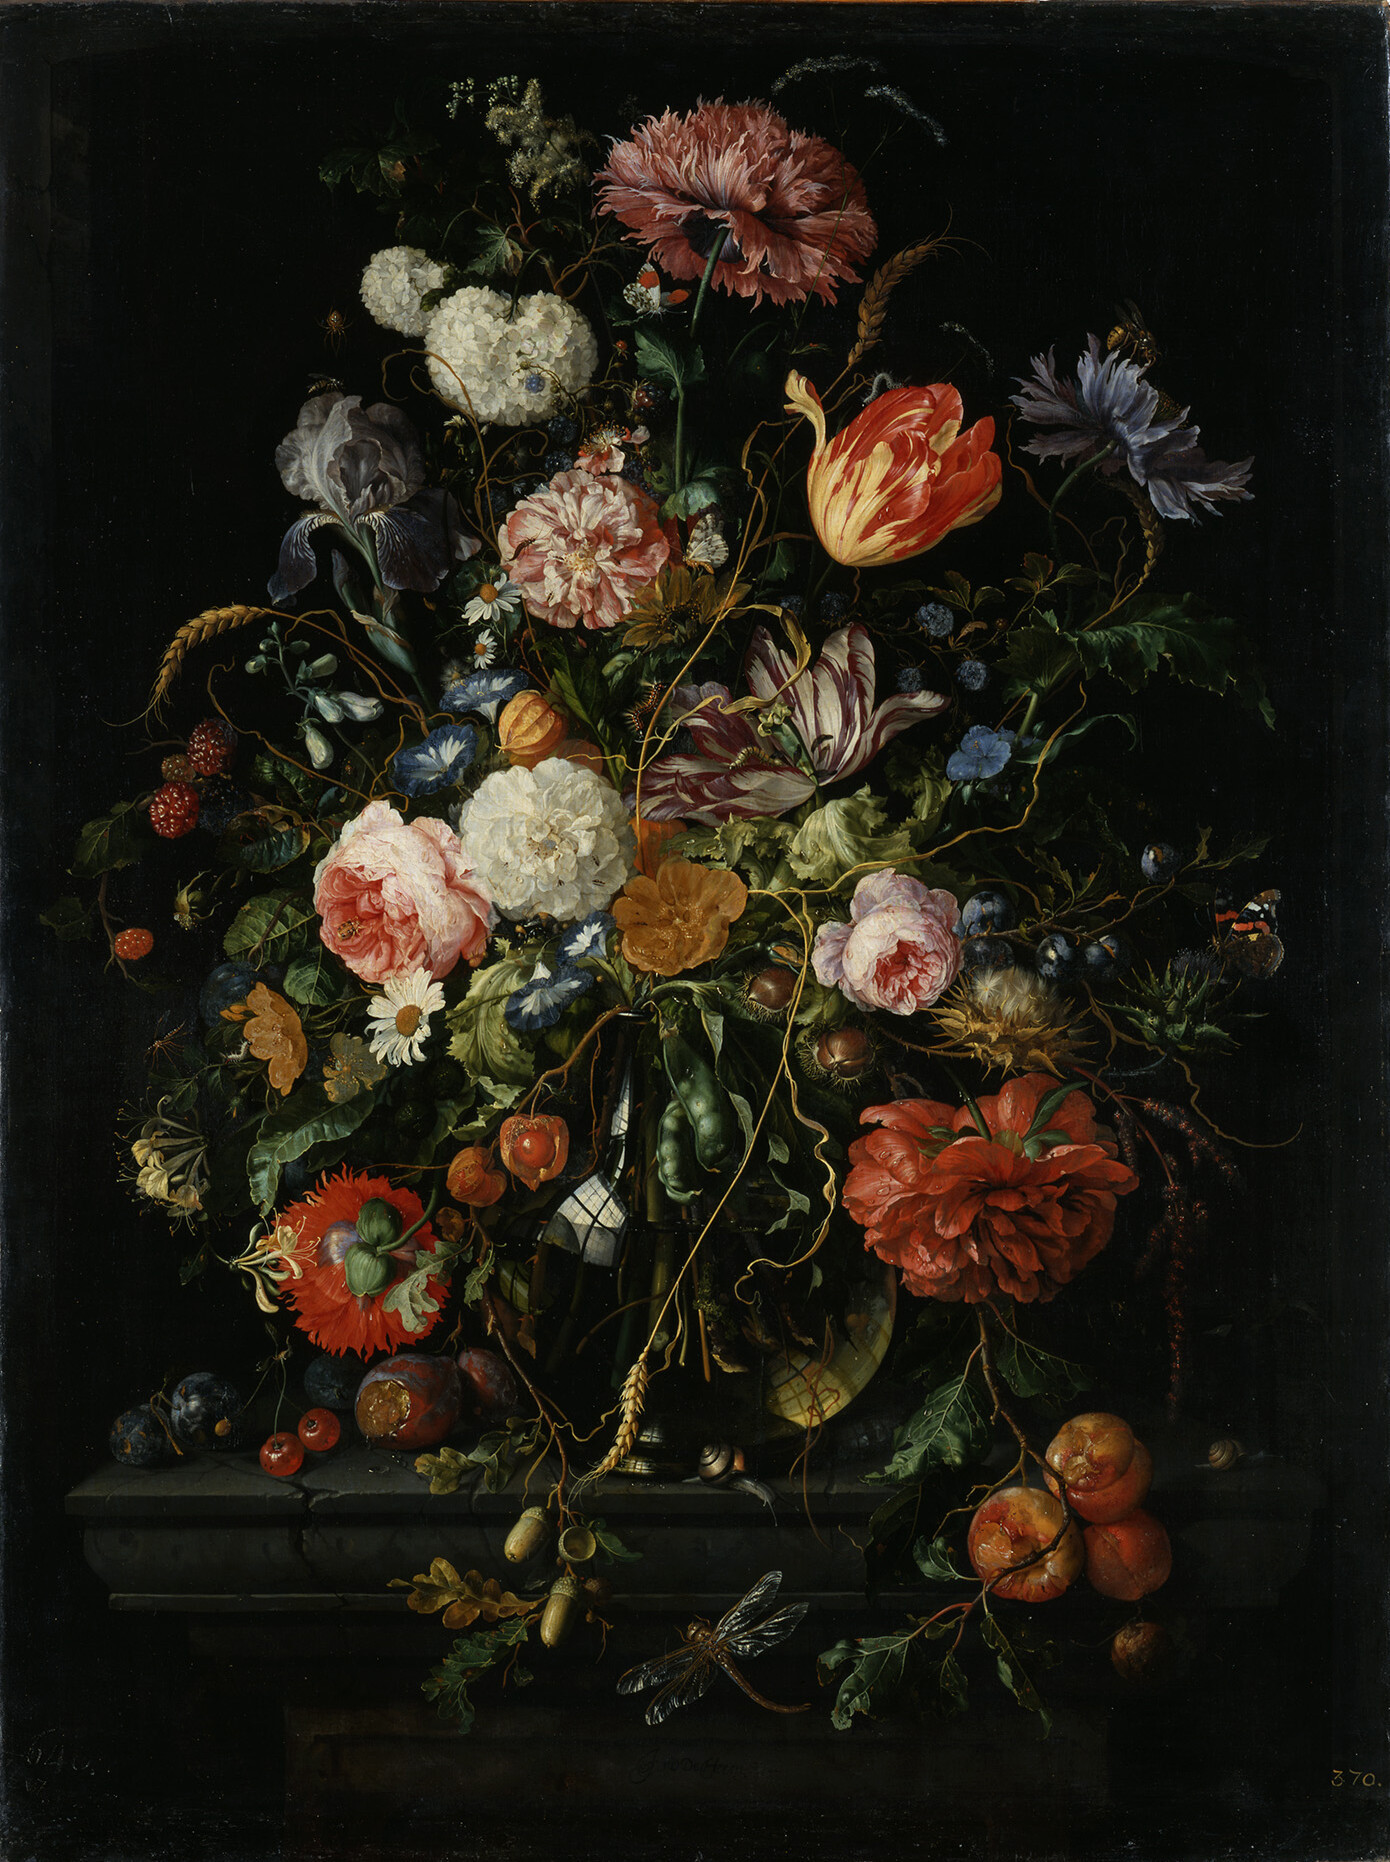 ヤン・デ・ヘーム 「花瓶と果物」 1670-72年頃 ドレスデン国立古典絵画館